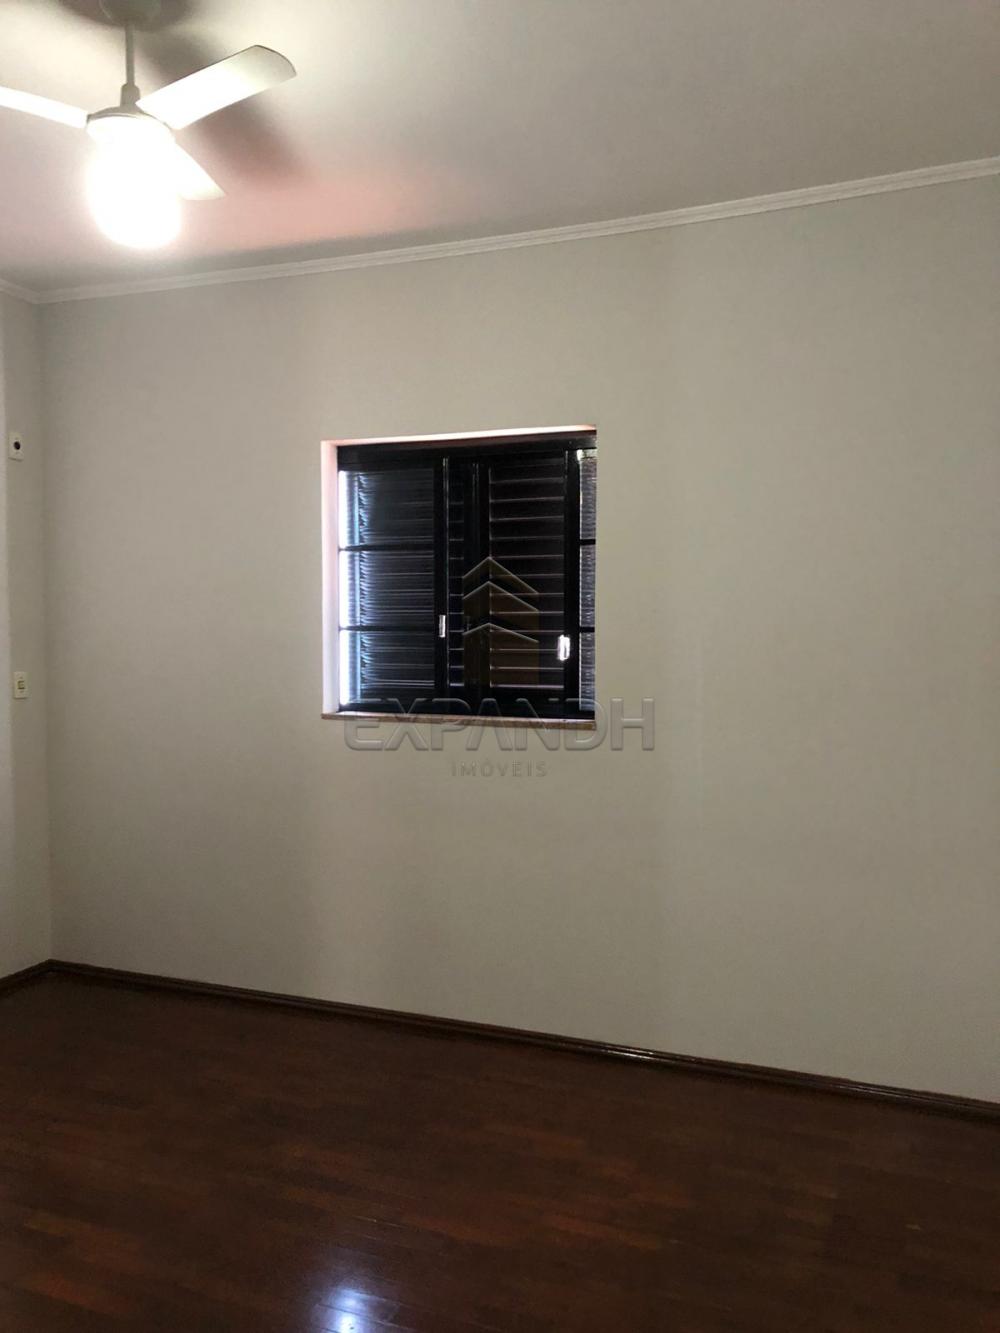 Alugar Casas / Padrão em Sertãozinho R$ 1.880,00 - Foto 16